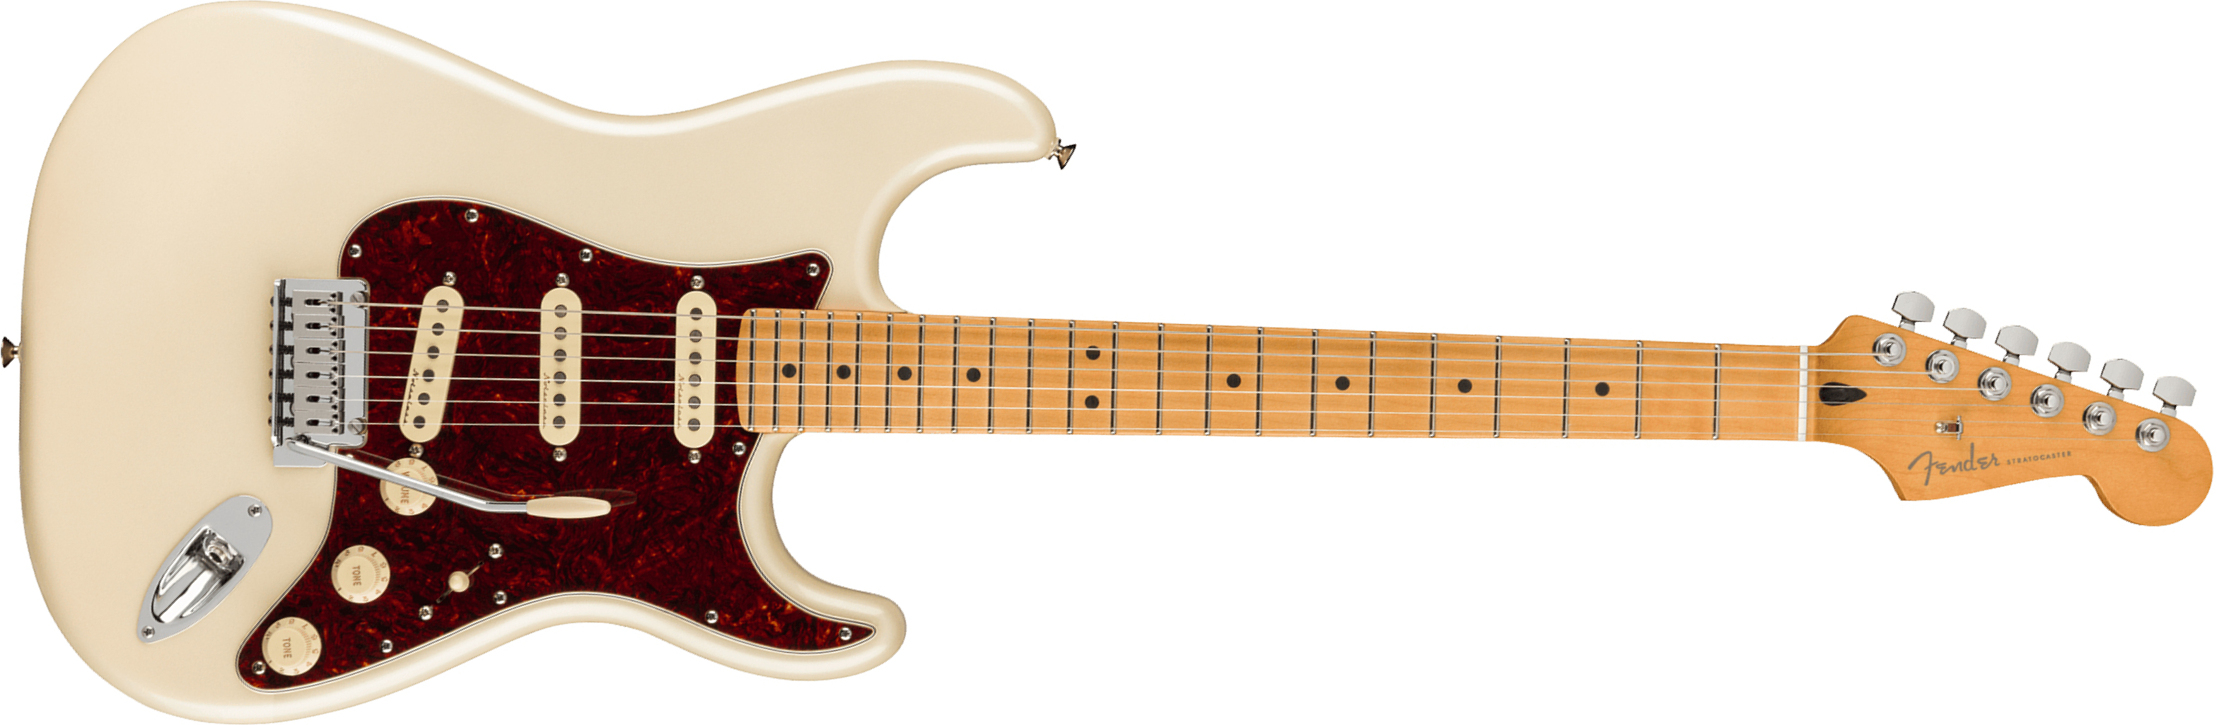 Fender Strat Player Plus Mex 3s Trem Mn - Olympic Pearl - Elektrische gitaar in Str-vorm - Main picture